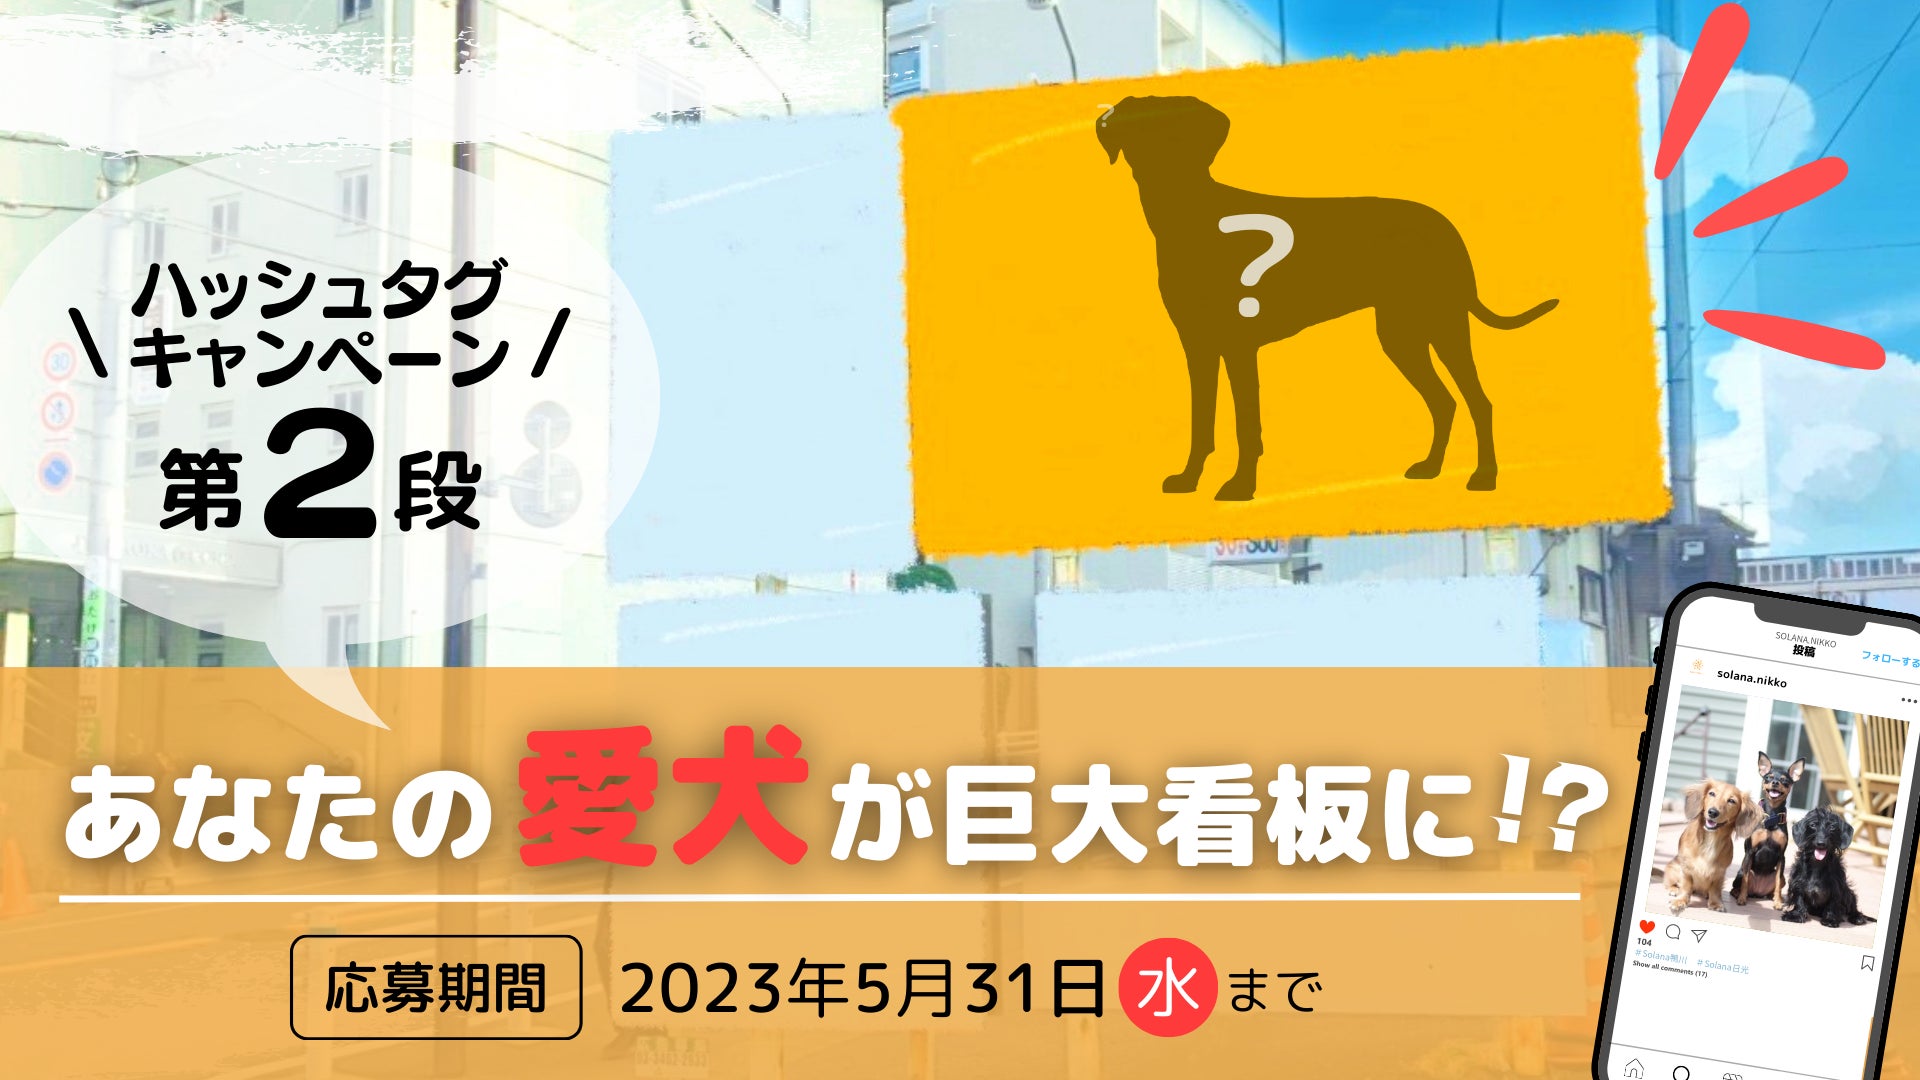 首都圏で「武将のふるさと愛知」をＰＲするイベント「あいち家康戦国絵巻in江戸」を開催します！